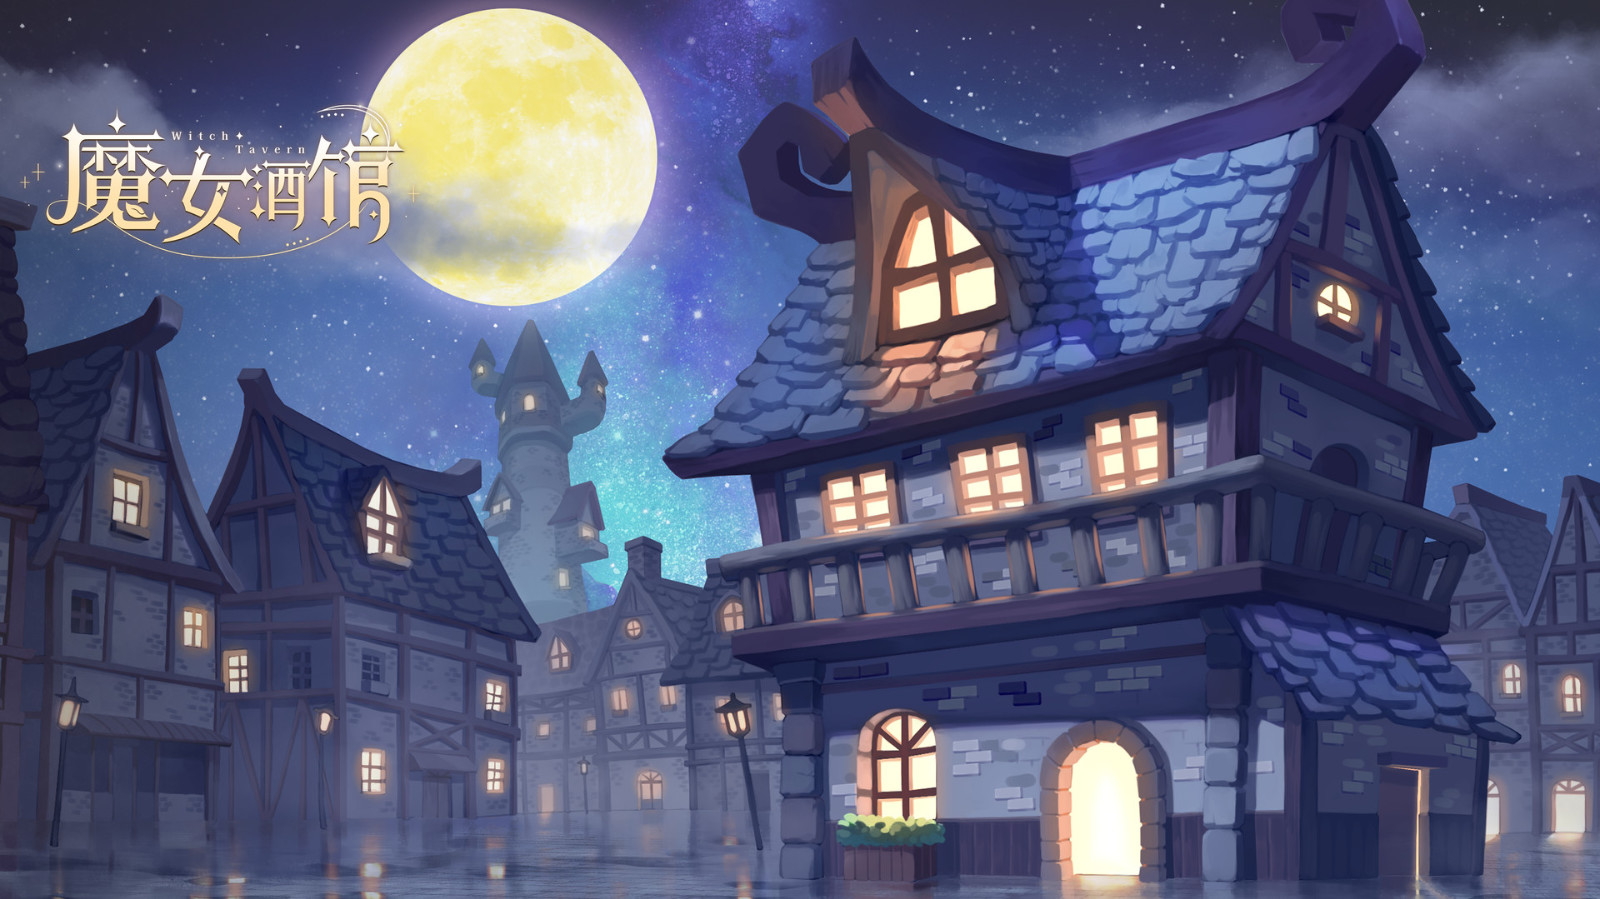 模拟经营游戏《魔女酒馆》Steam页面上线 明年5月发售 二次世界 第3张